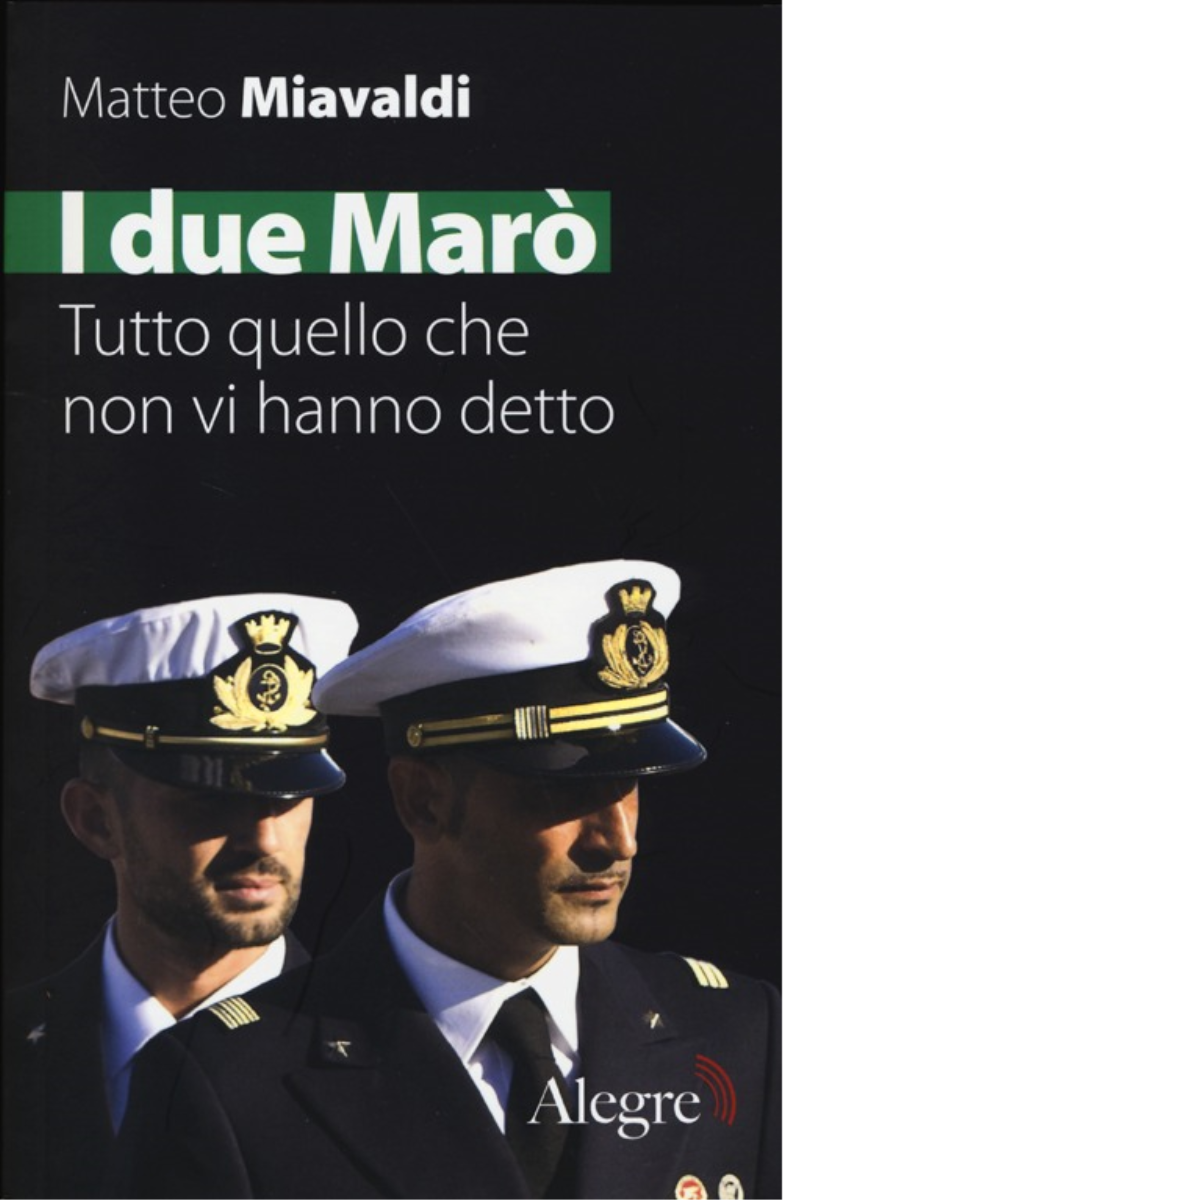 I DUE MARO'. TUTTO QUELLO CHE NON VI HANNO DETTO di MATTEO MIAVALDI -alegre,2013 libro usato